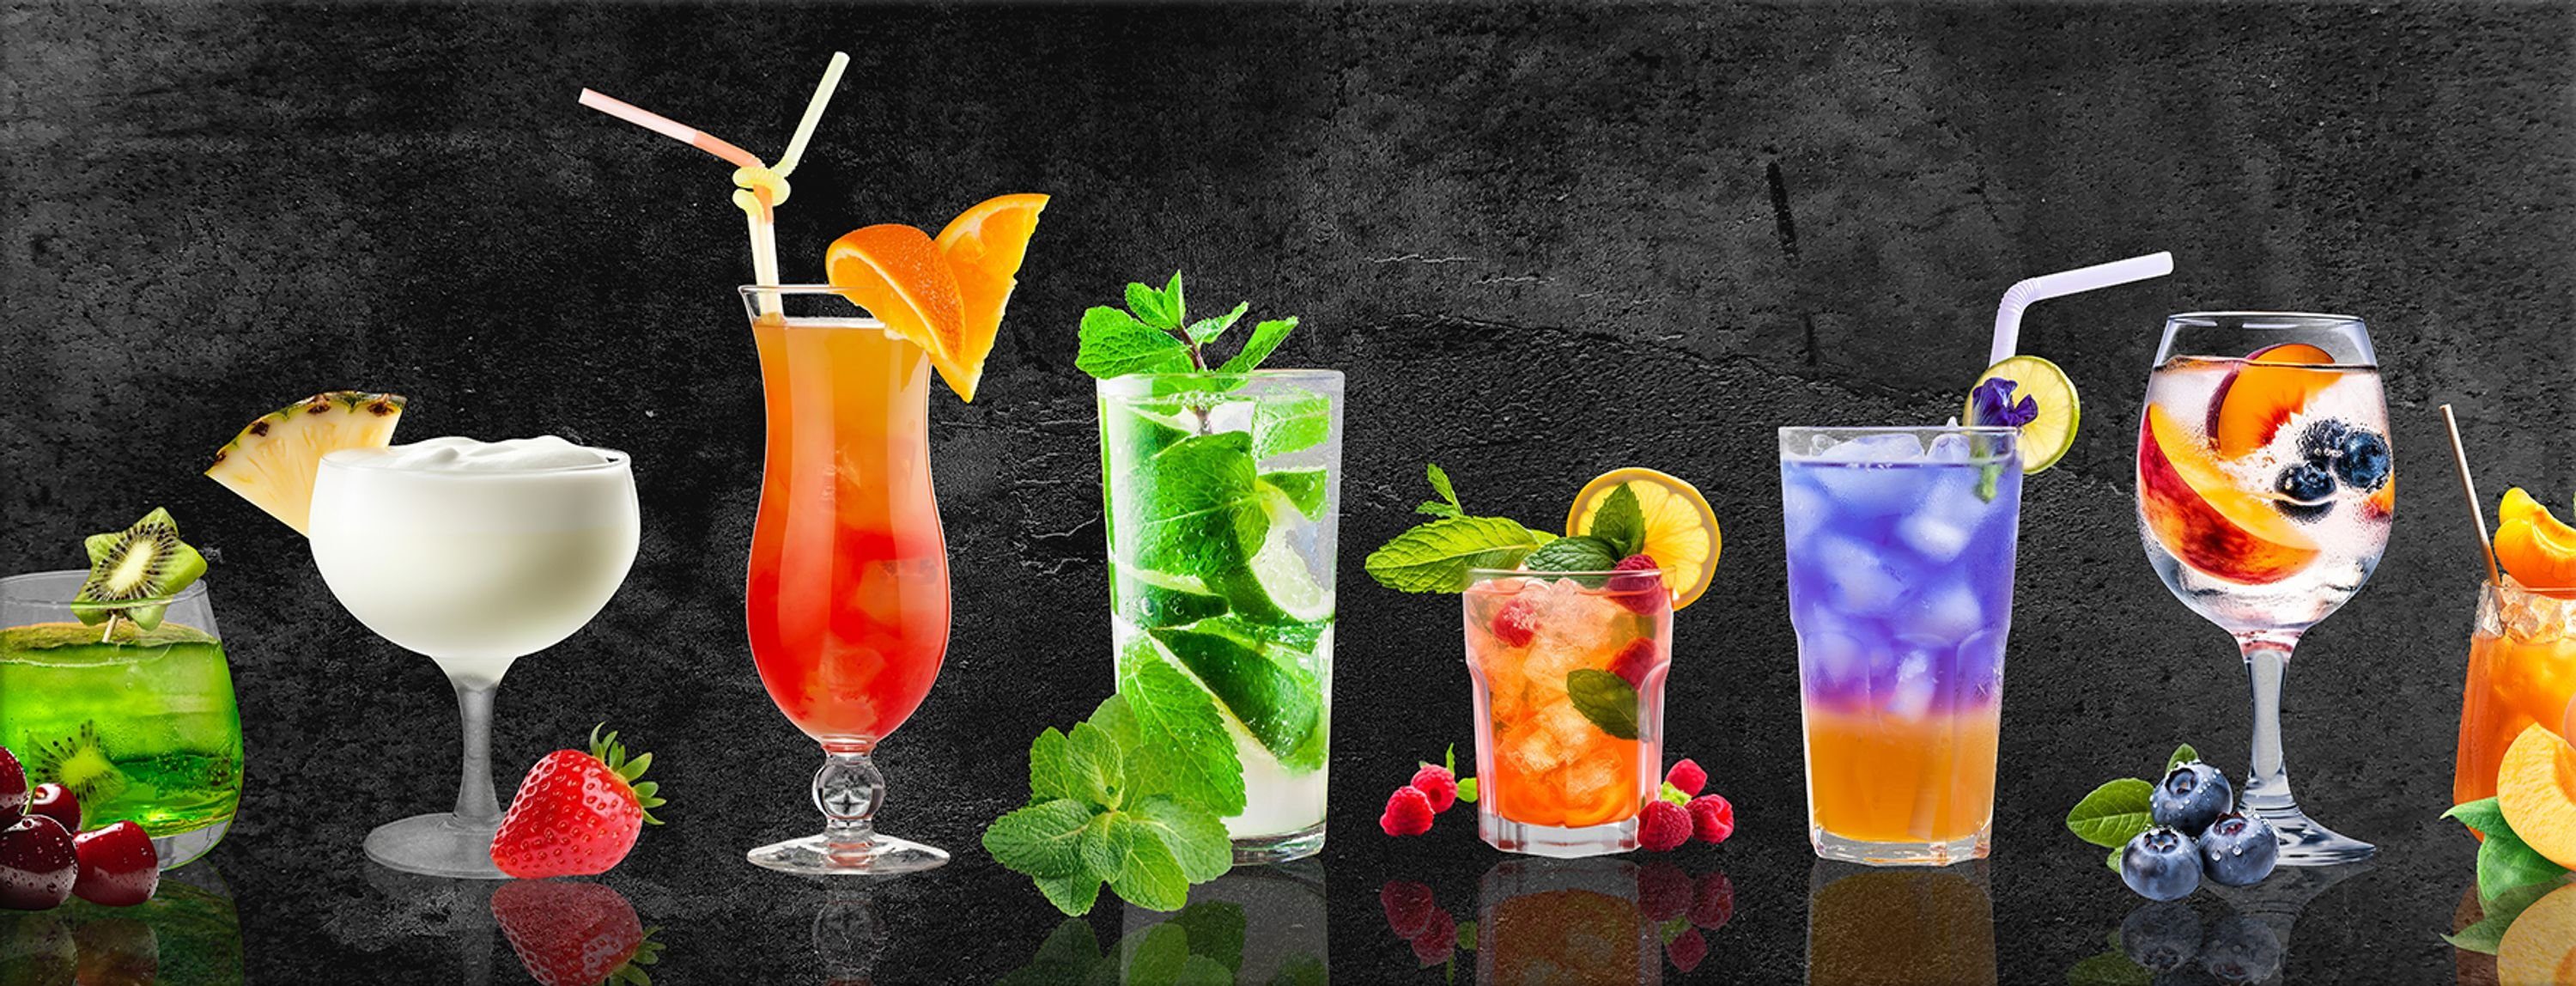 artissimo Glasbild Glasbild 80x30cm Bild aus Glas Küche Küchenbild bunt modern Bar Mojito, Essen und Trinken: Cocktails